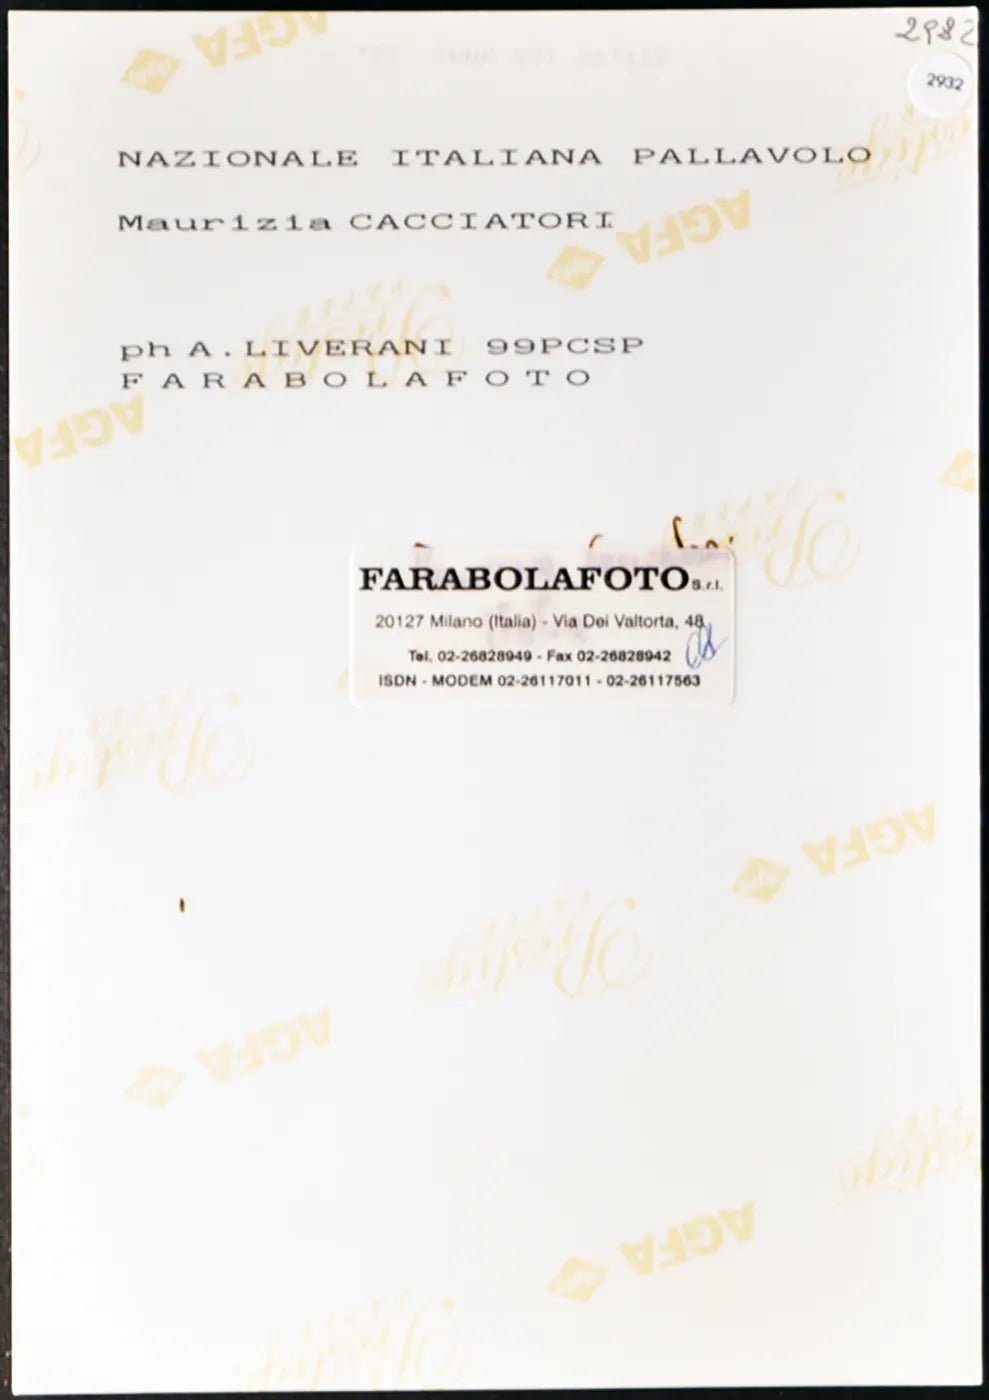 Cacciatori Nazionale Pallavolo 1999 Ft 2932 - Stampa 20x15 cm - Farabola Stampa ai sali d'argento